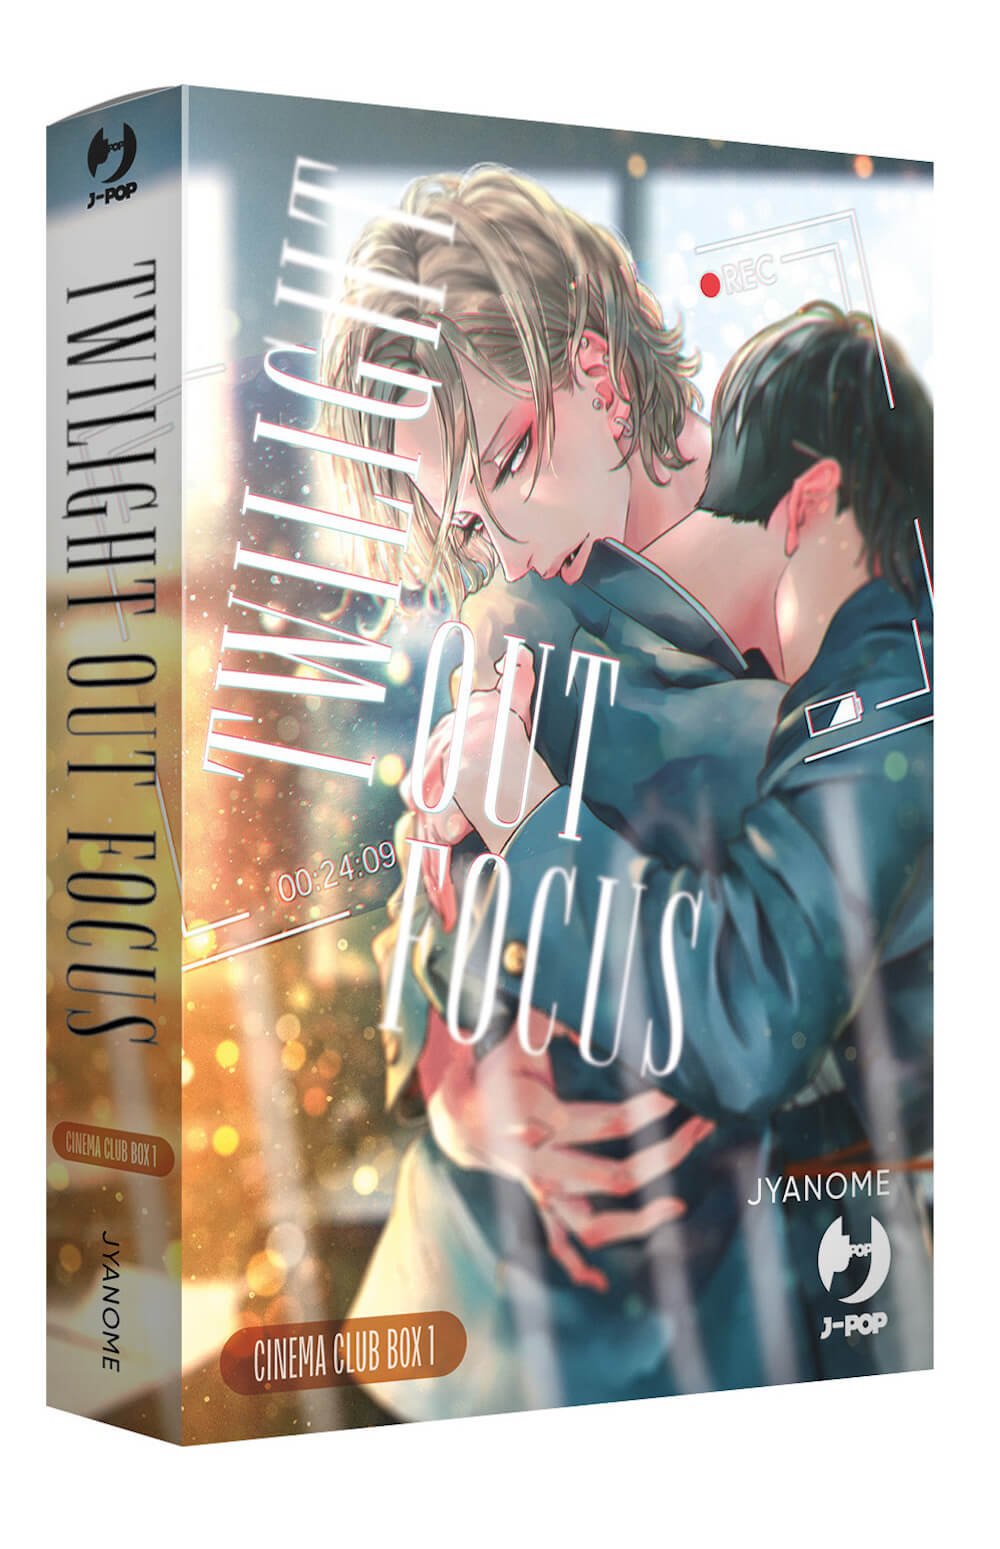 Twilight Out of Focus, déjà sorti en édition Cinema Box, parmi les sorties J-Pop Manga du 17 mai 2023.